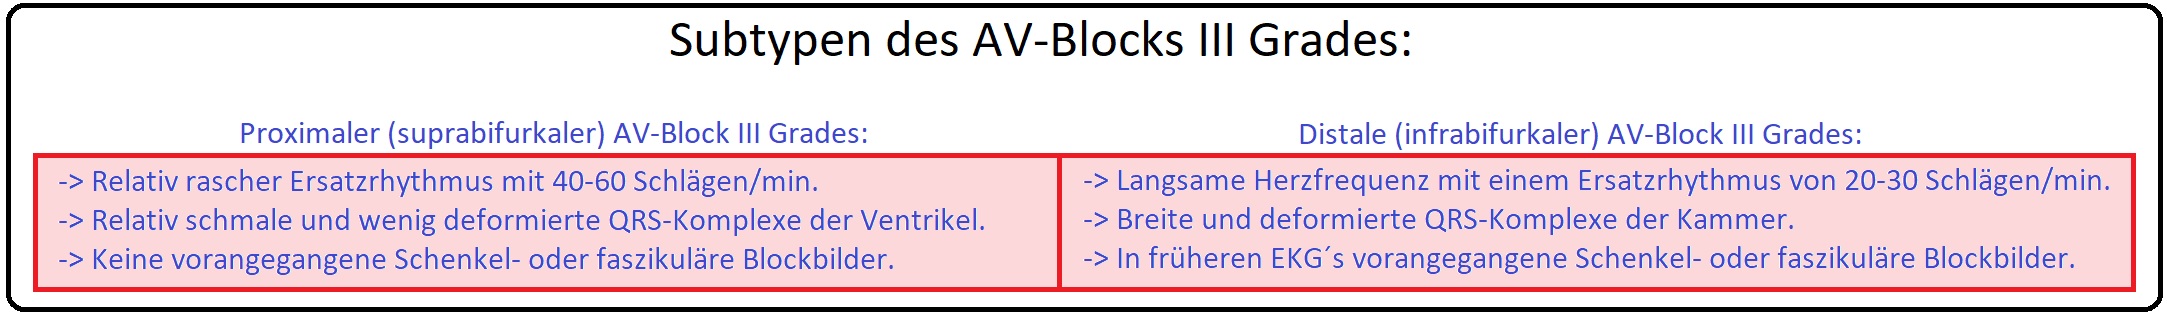 1030 Subtypen des AV Blocks III Grades